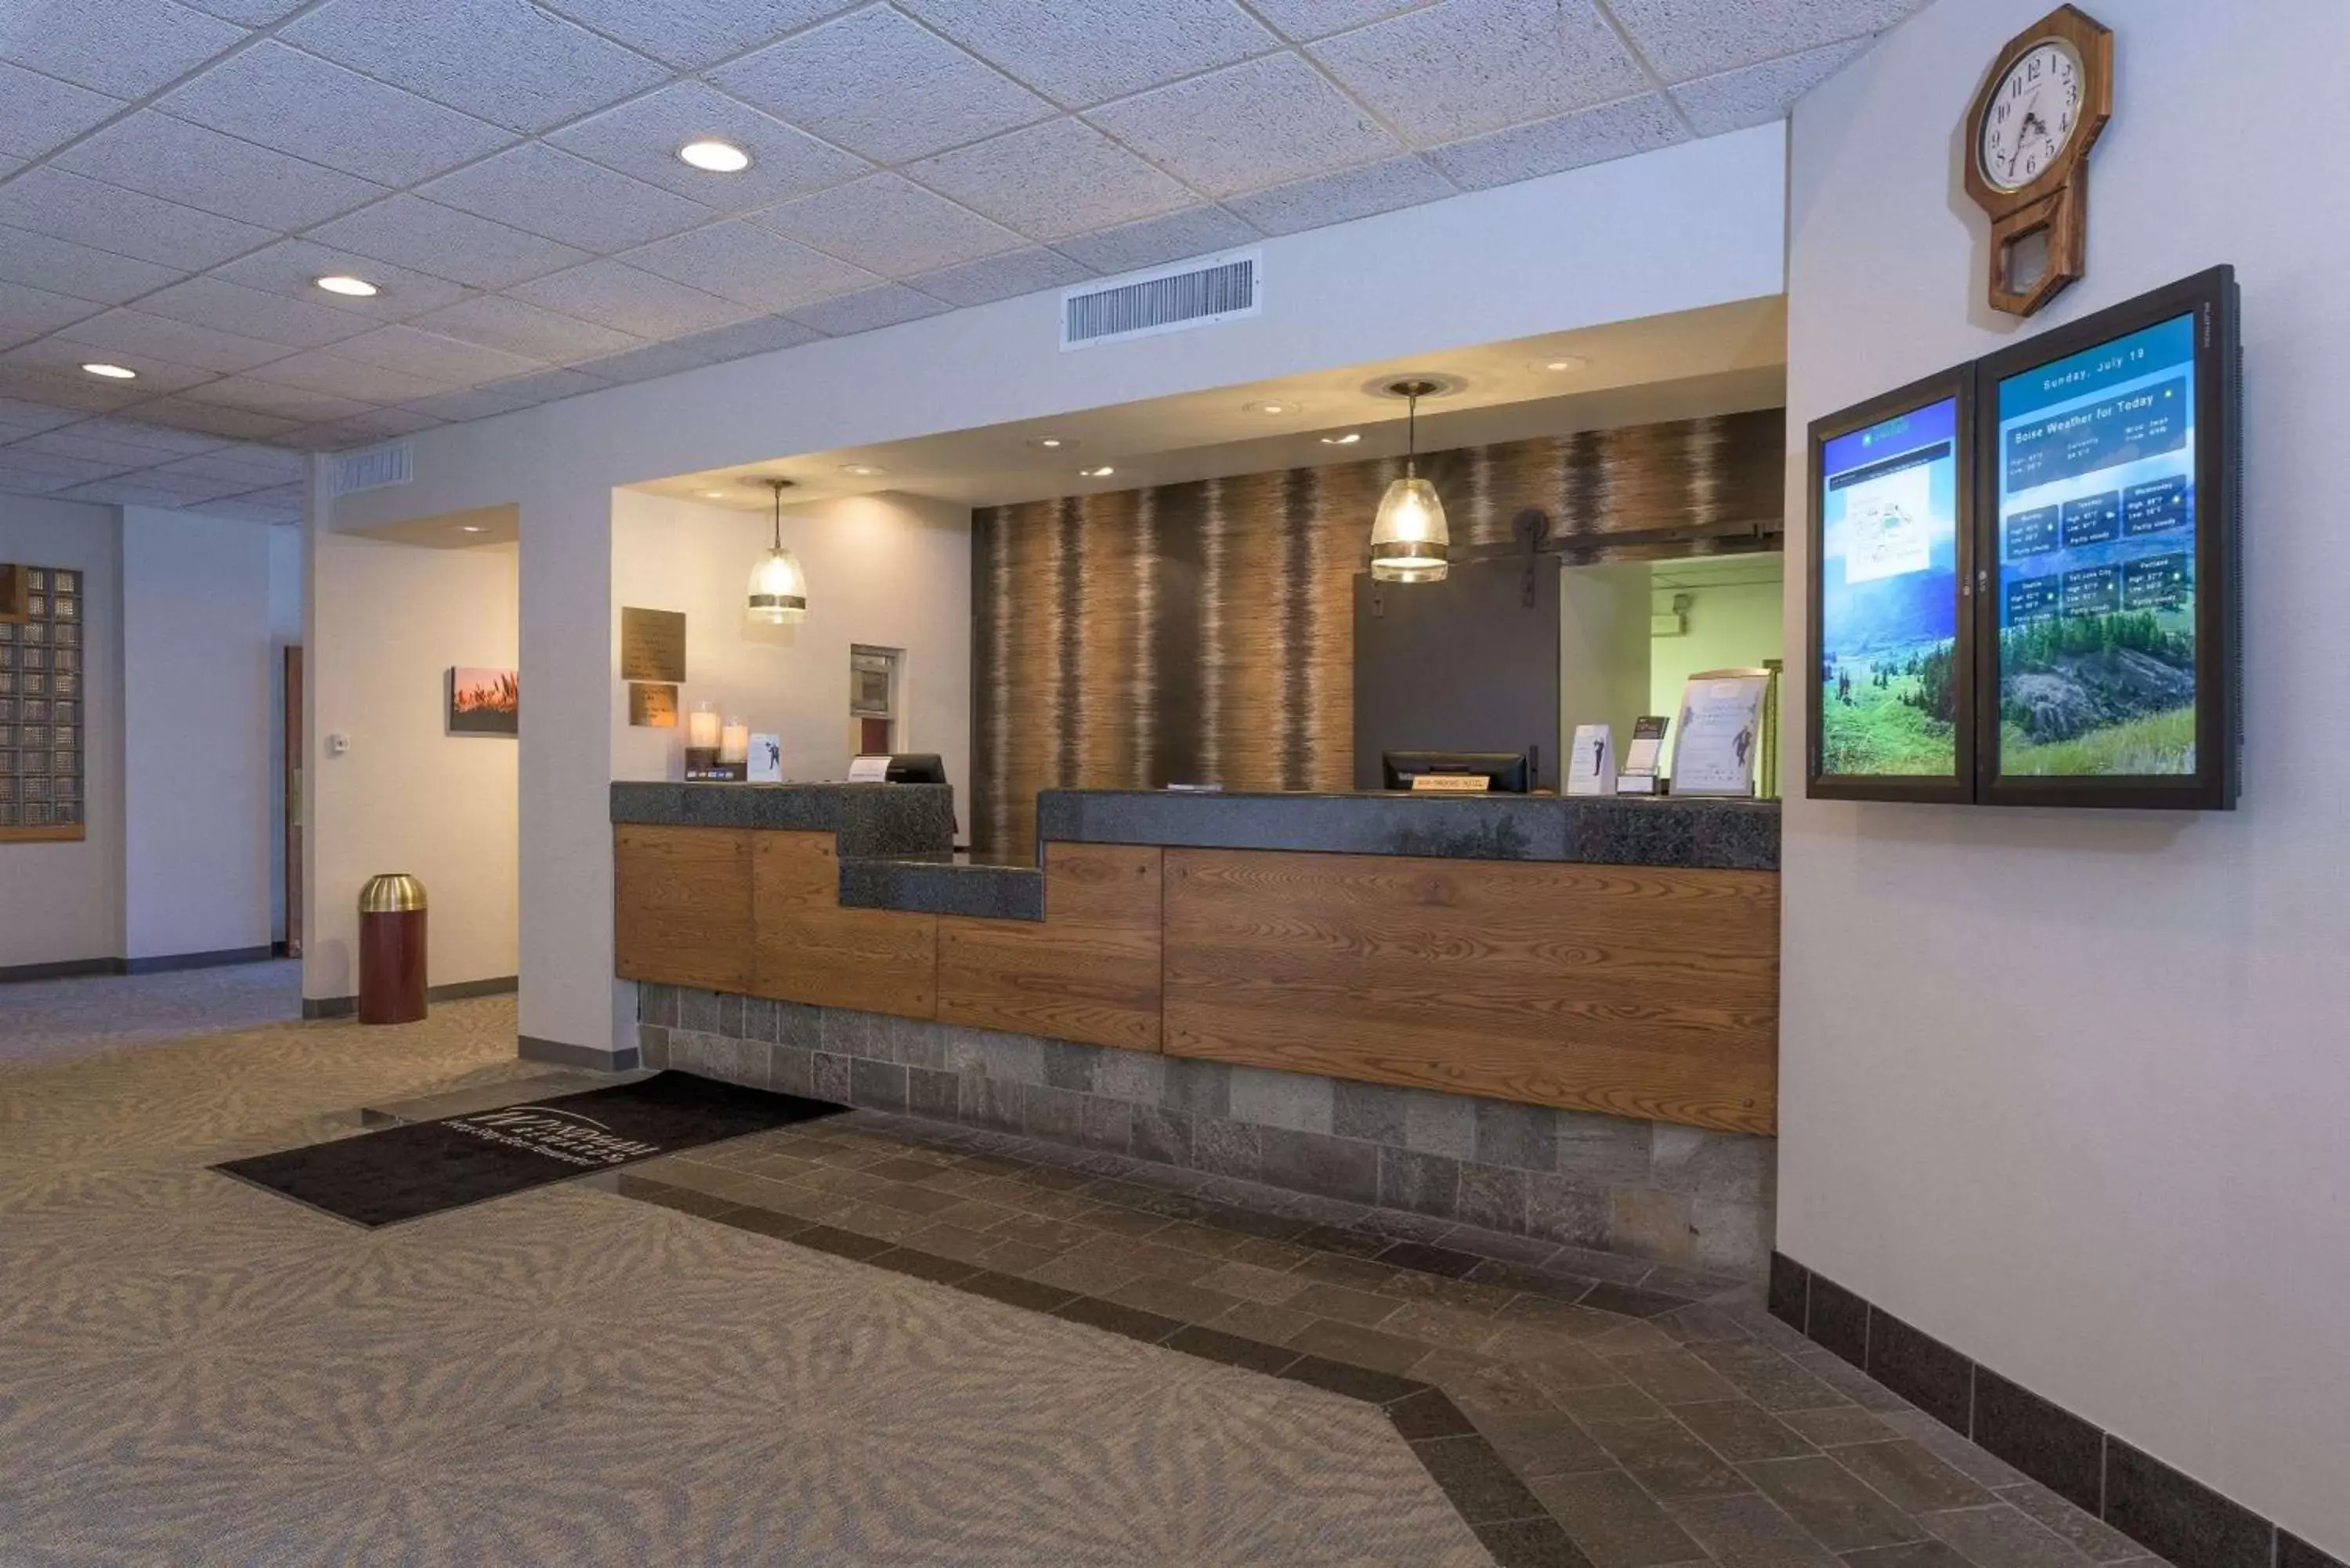 Lobby or reception, Lobby/Reception in Ramada by Wyndham Boise